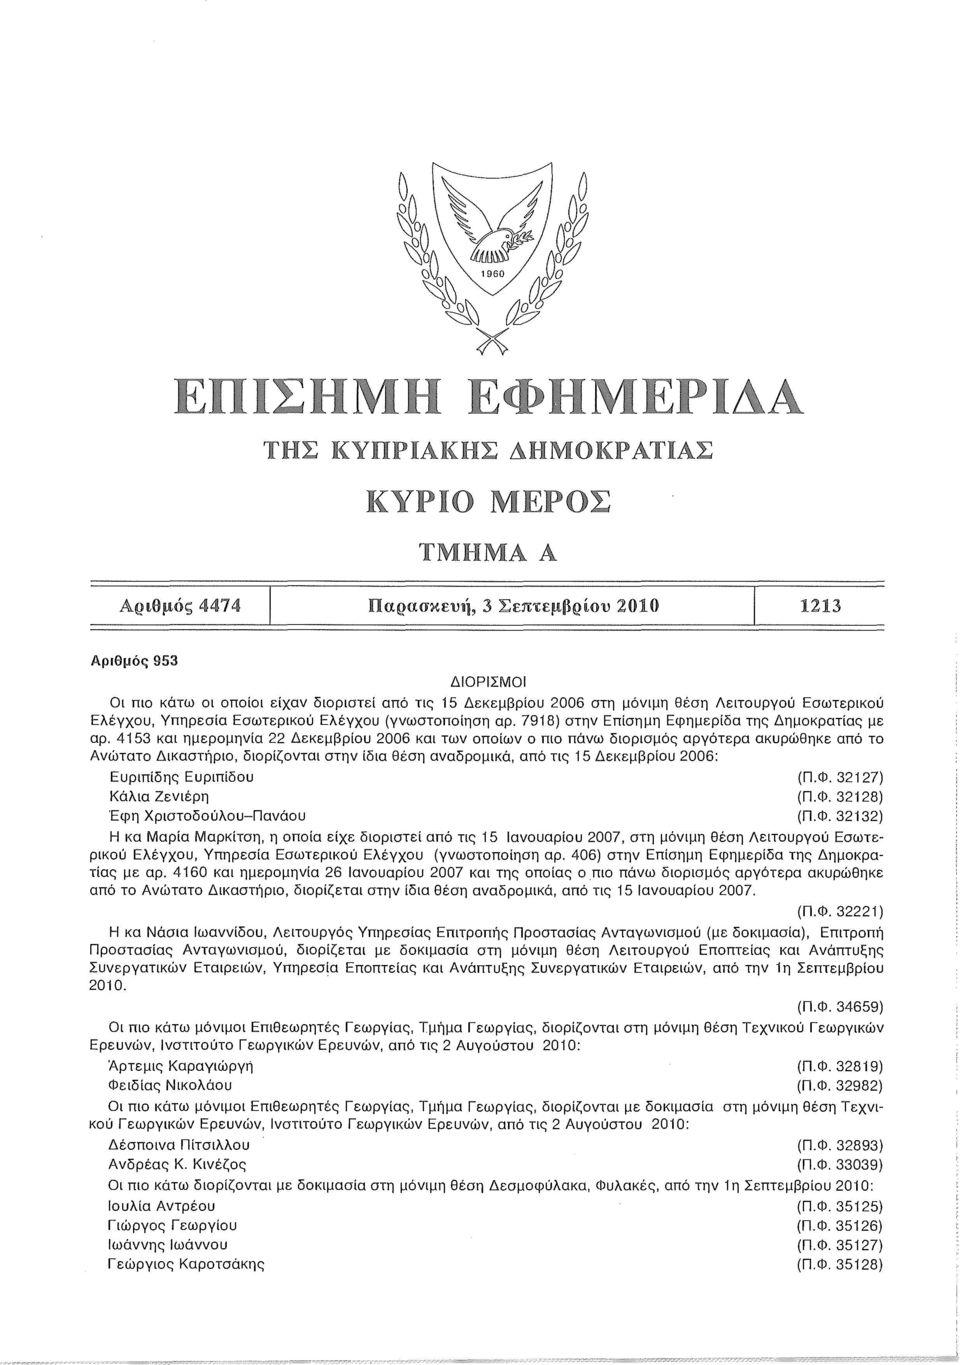 4153 και ημερομηνία 22 Δεκεμβρίου 2006 και των οποίων ο πιο πάνω διορισμός αργότερα ακυρώθηκε από το Ανώτατο Δικαστήριο, διορίζονται στην ίδια θέση αναδρομικά, από τις 15 Δεκεμβρίου 2006: Ευριπίδης